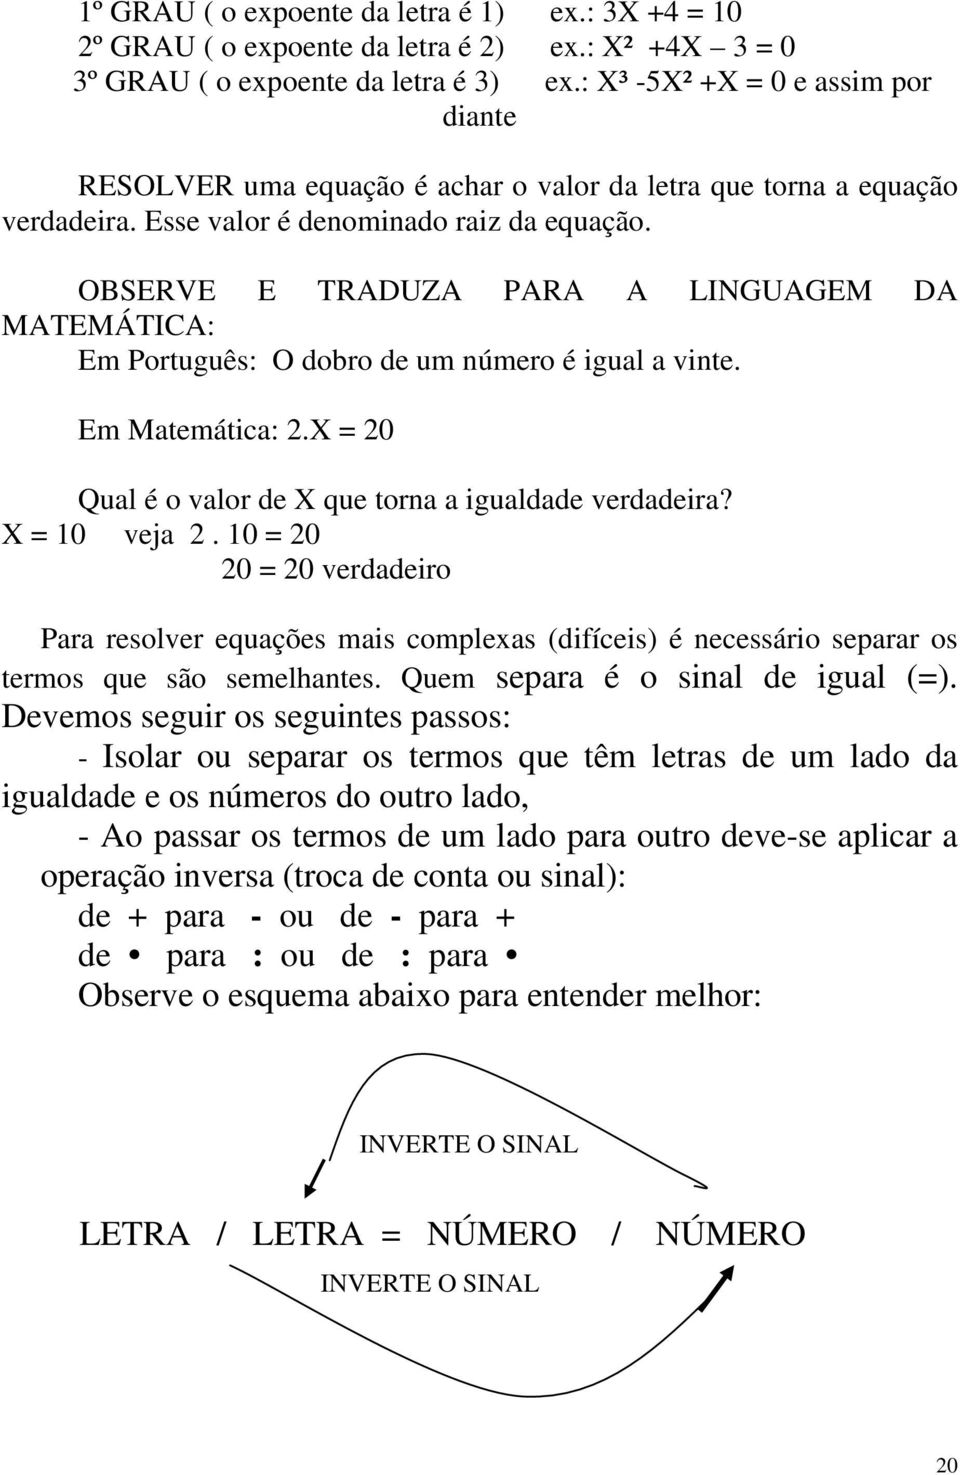 OBSERVE E TRADUZA PARA A LINGUAGEM DA MATEMÁTICA: Em Português: O dobro de um número é igual a vinte. Em Matemática: 2.X = 20 Qual é o valor de X que torna a igualdade verdadeira? X = 10 veja 2.